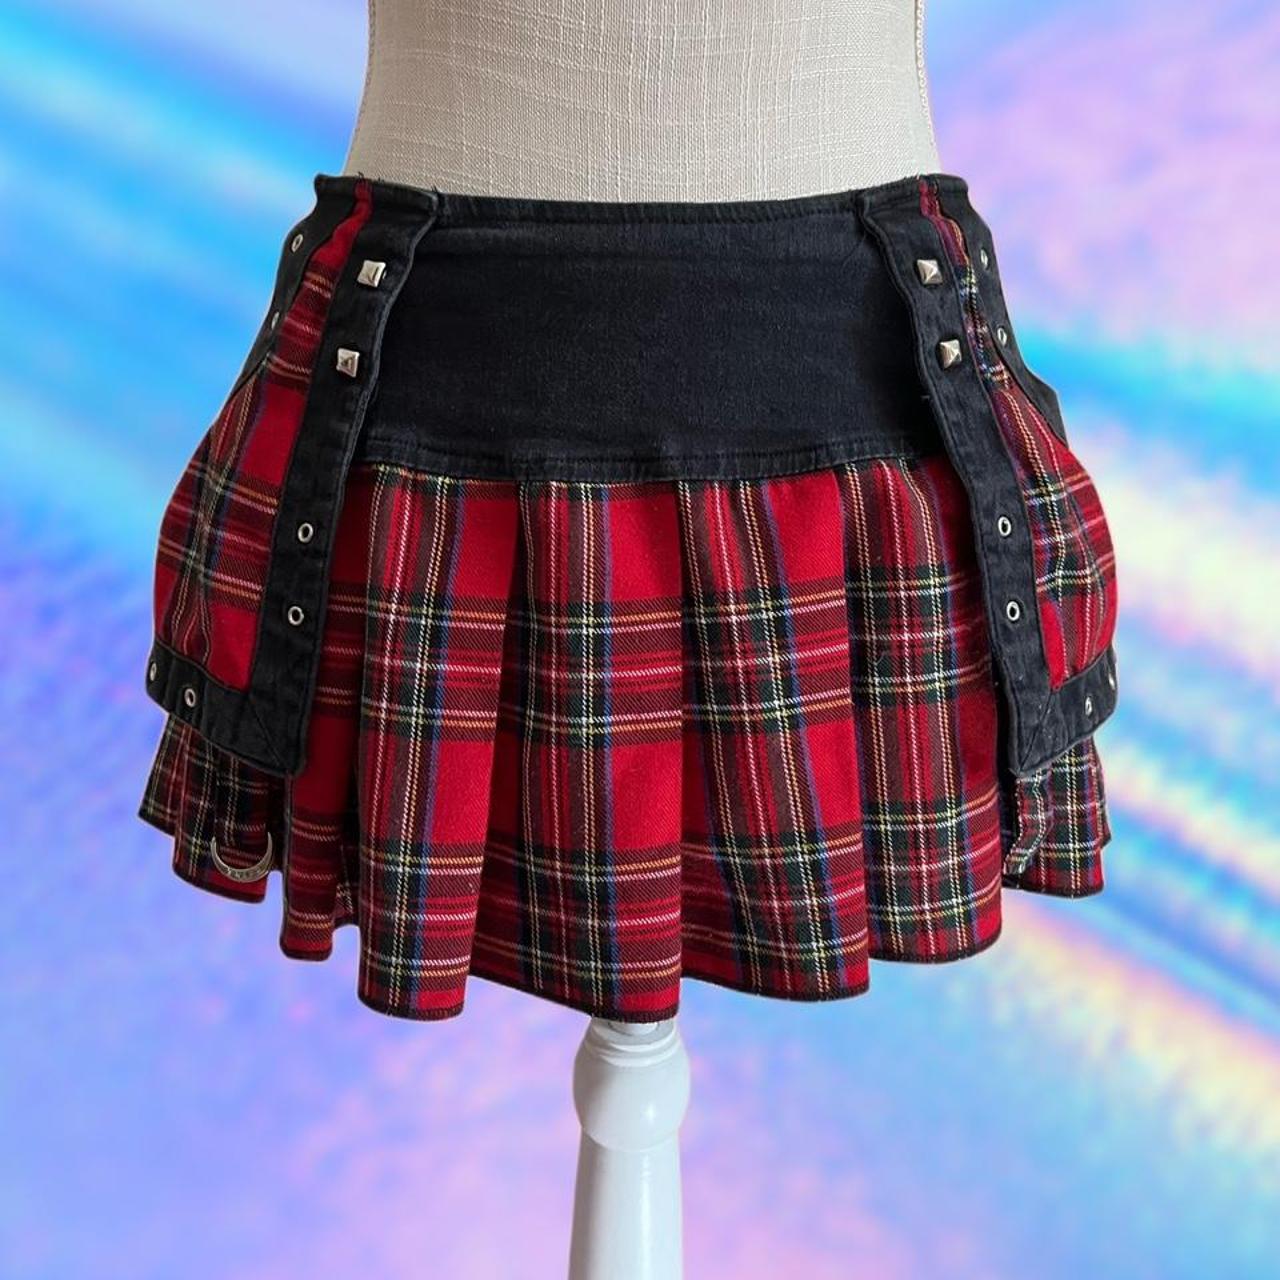 パーティを彩るご馳走や TRIPP 90s nyc skirt mini ミニスカート